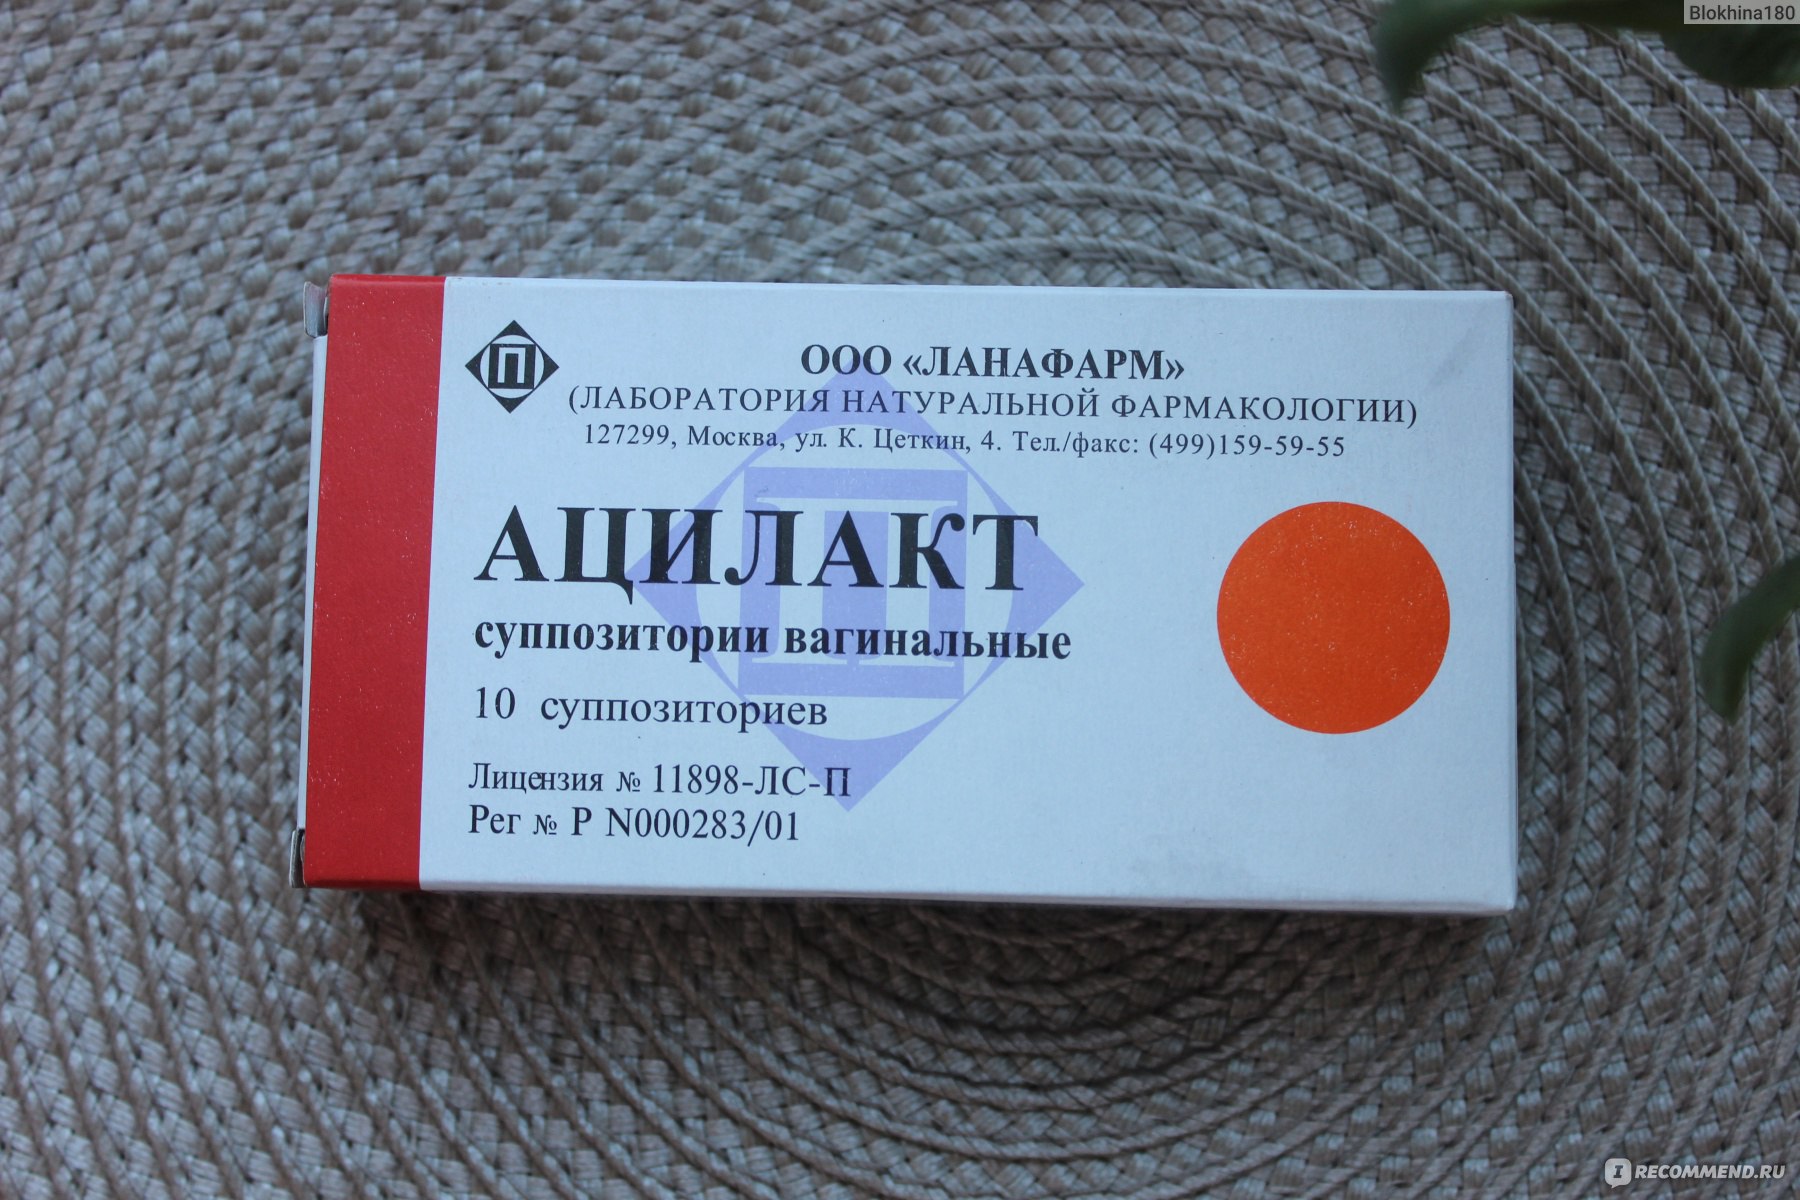 Ацилакт, суппозитории вагинальные, 10 шт купить в интернет-аптеке в Дзержинске от руб.